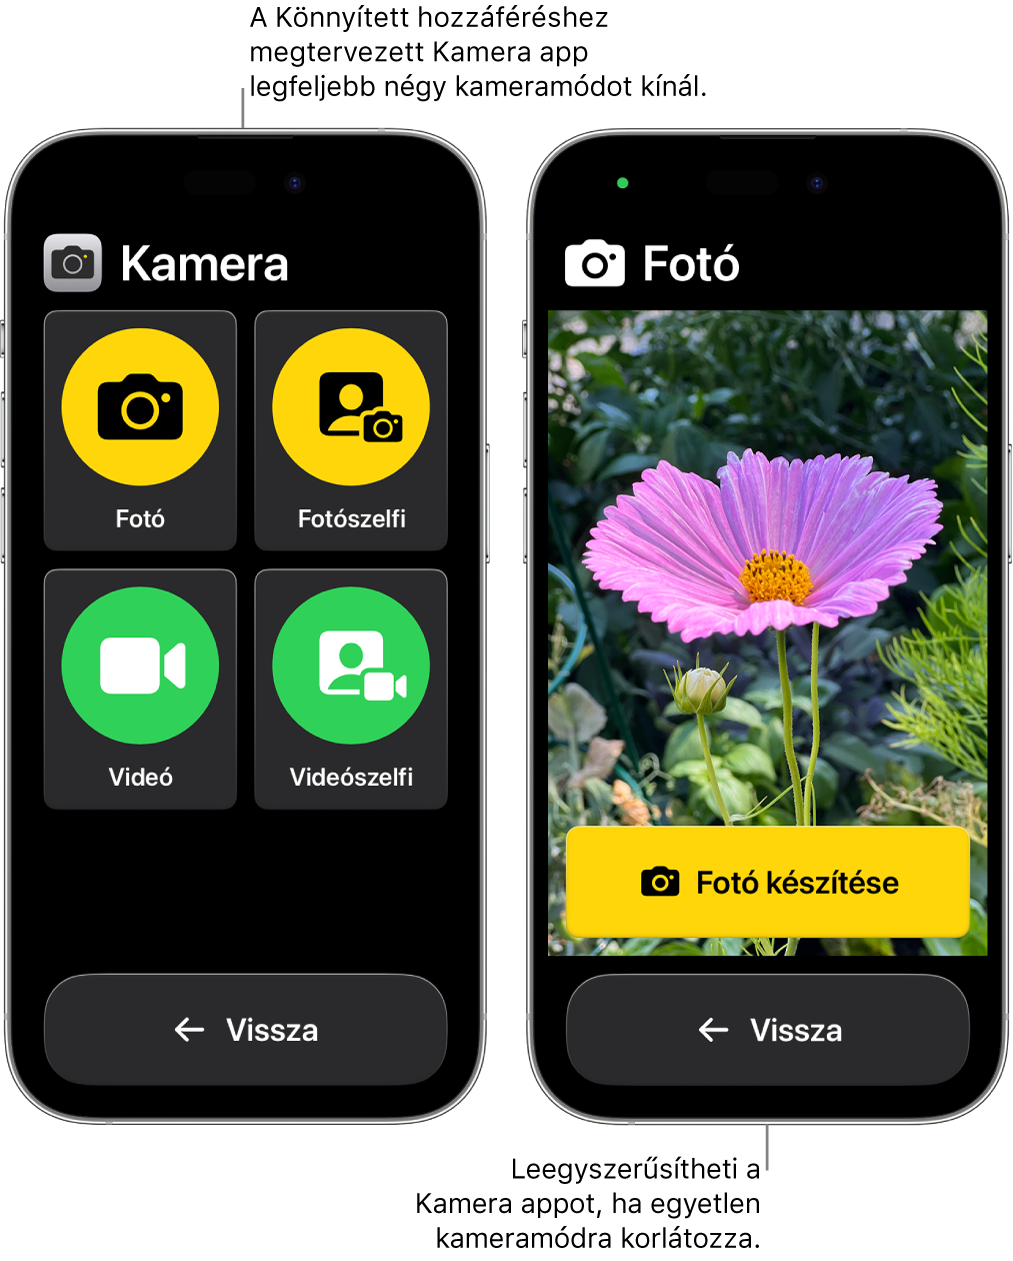 Két iPhone a Könnyített hozzáféréssel. Az egyik iPhone-on a Kamera app látható különféle választható kameramódokkal, például a Videó és a Fotószelfi móddal. A másik iPhone-on a Kamera app egyetlen fotózási móddal látható.